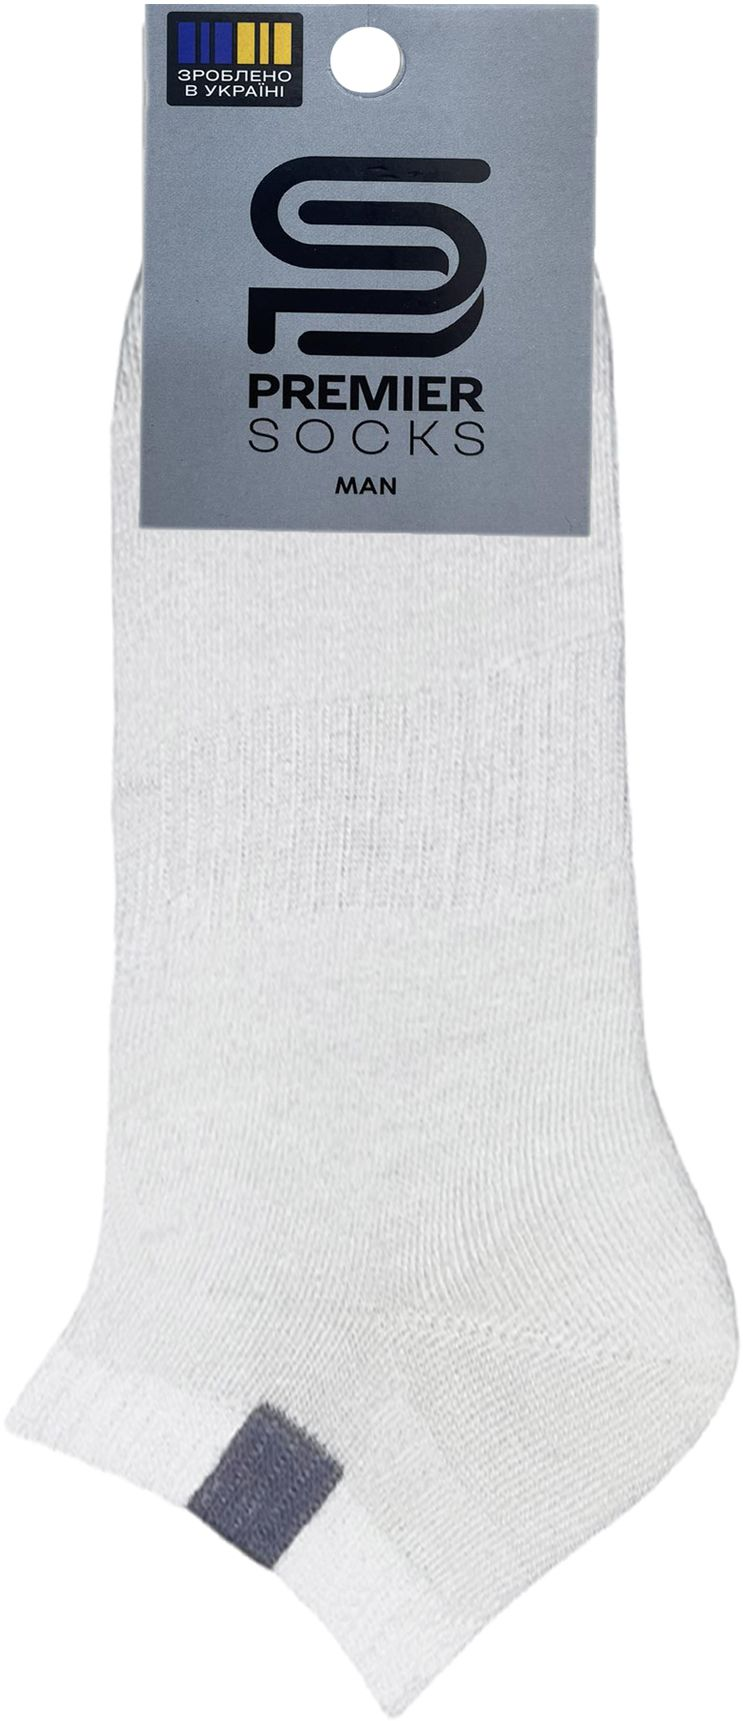 Шкарпетки чоловічі Premier Socks 40-41 1 пара білі (4820163318332)фото2